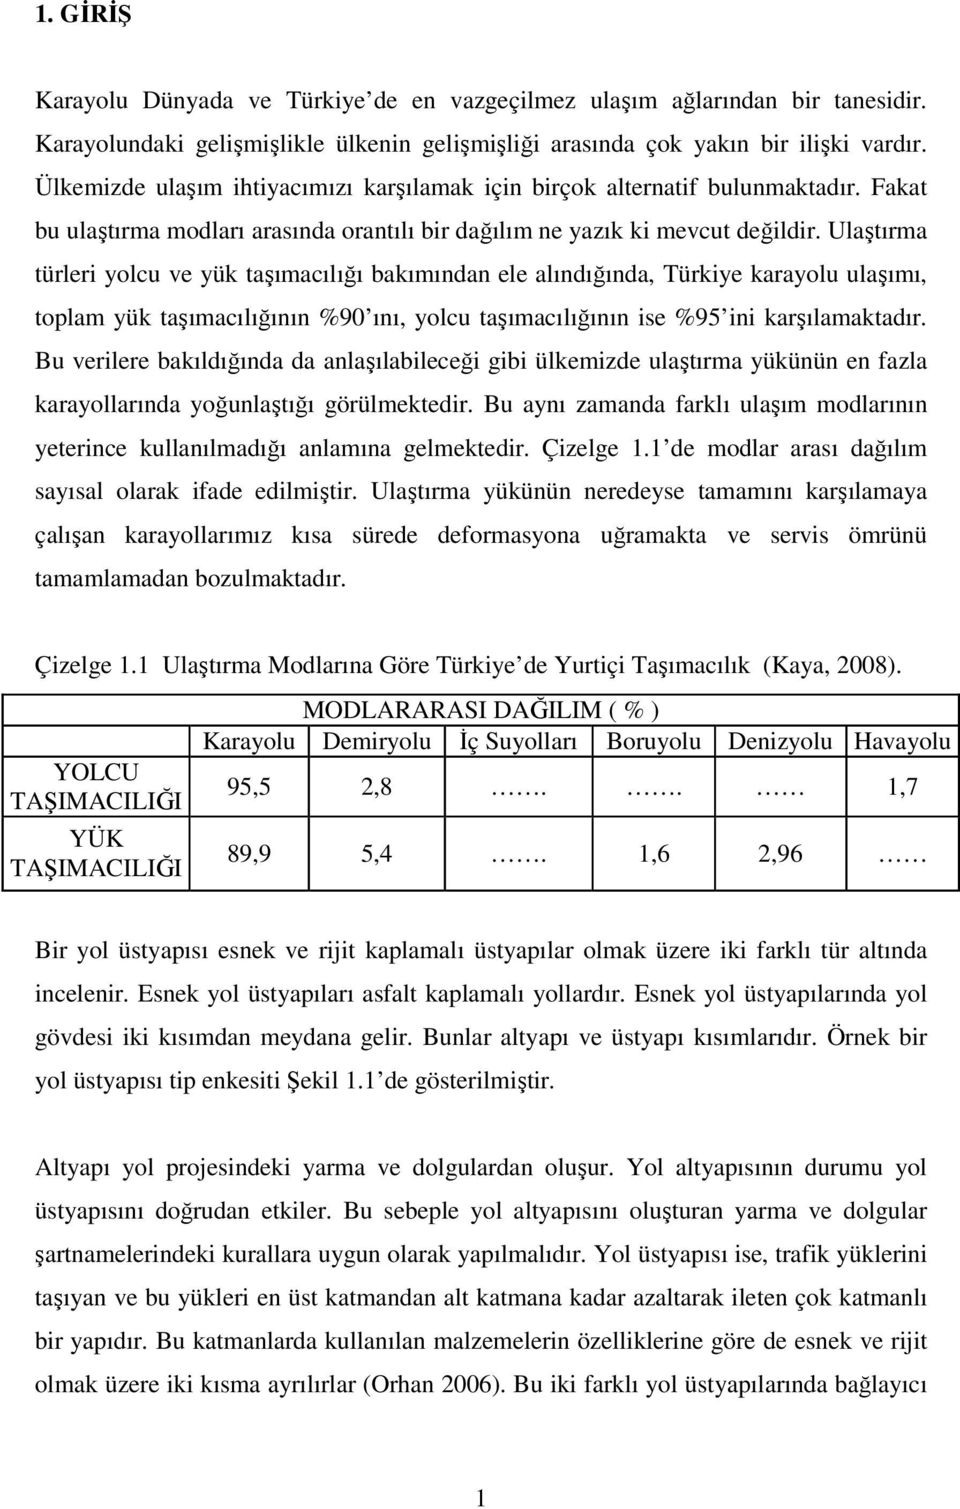 Ulaştırma türleri yolcu ve yük taşımacılığı bakımından ele alındığında, Türkiye karayolu ulaşımı, toplam yük taşımacılığının %90 ını, yolcu taşımacılığının ise %95 ini karşılamaktadır.